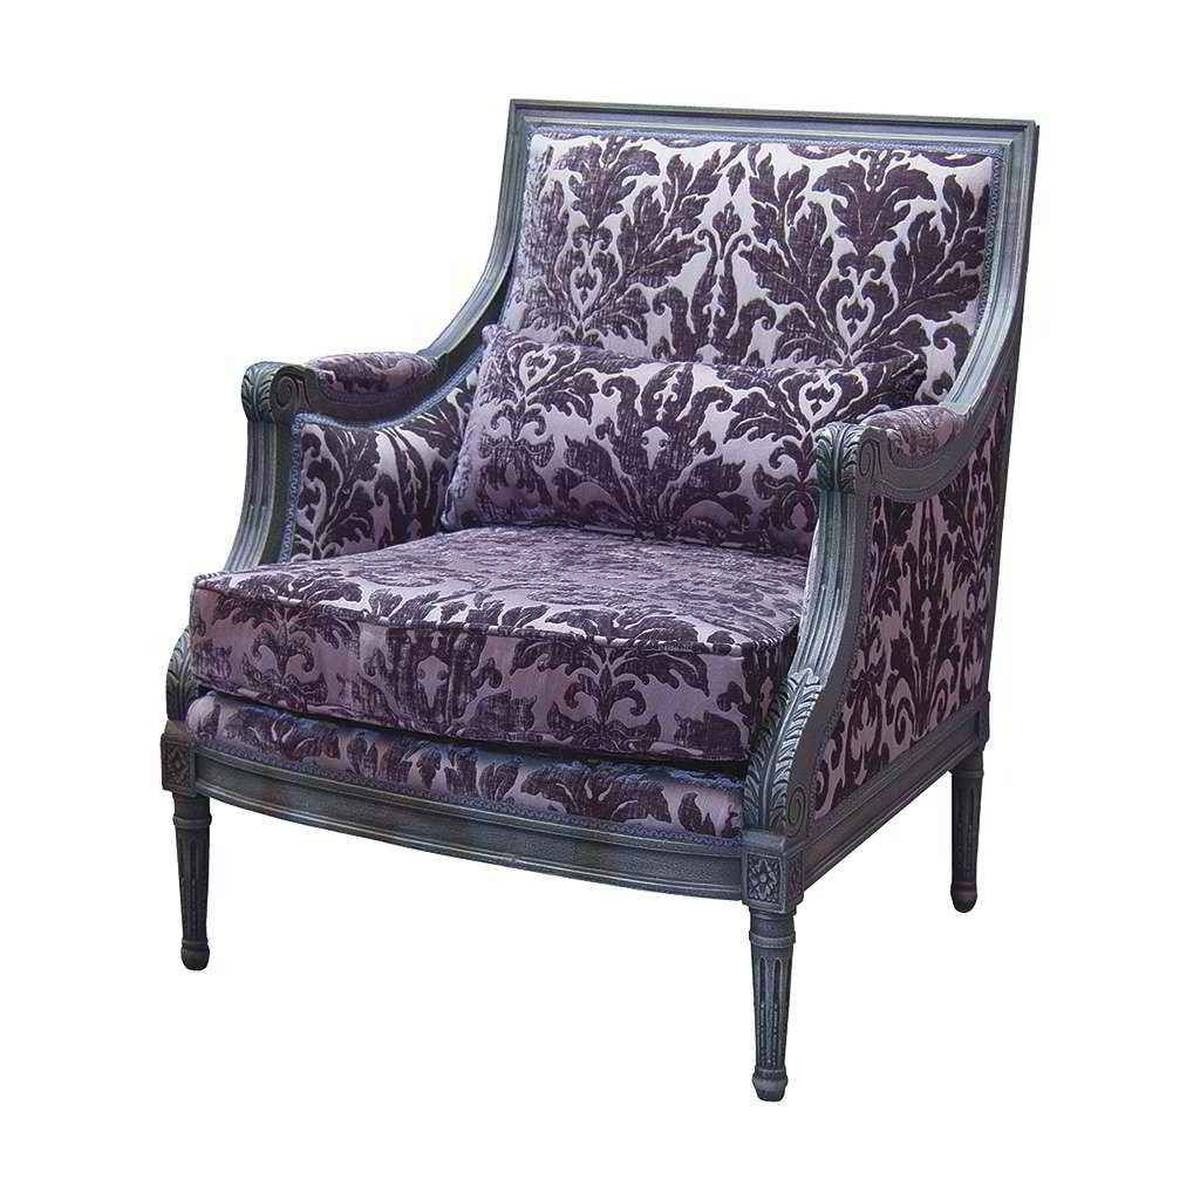 Кресло DO-619 armchair из Испании фабрики GUADARTE